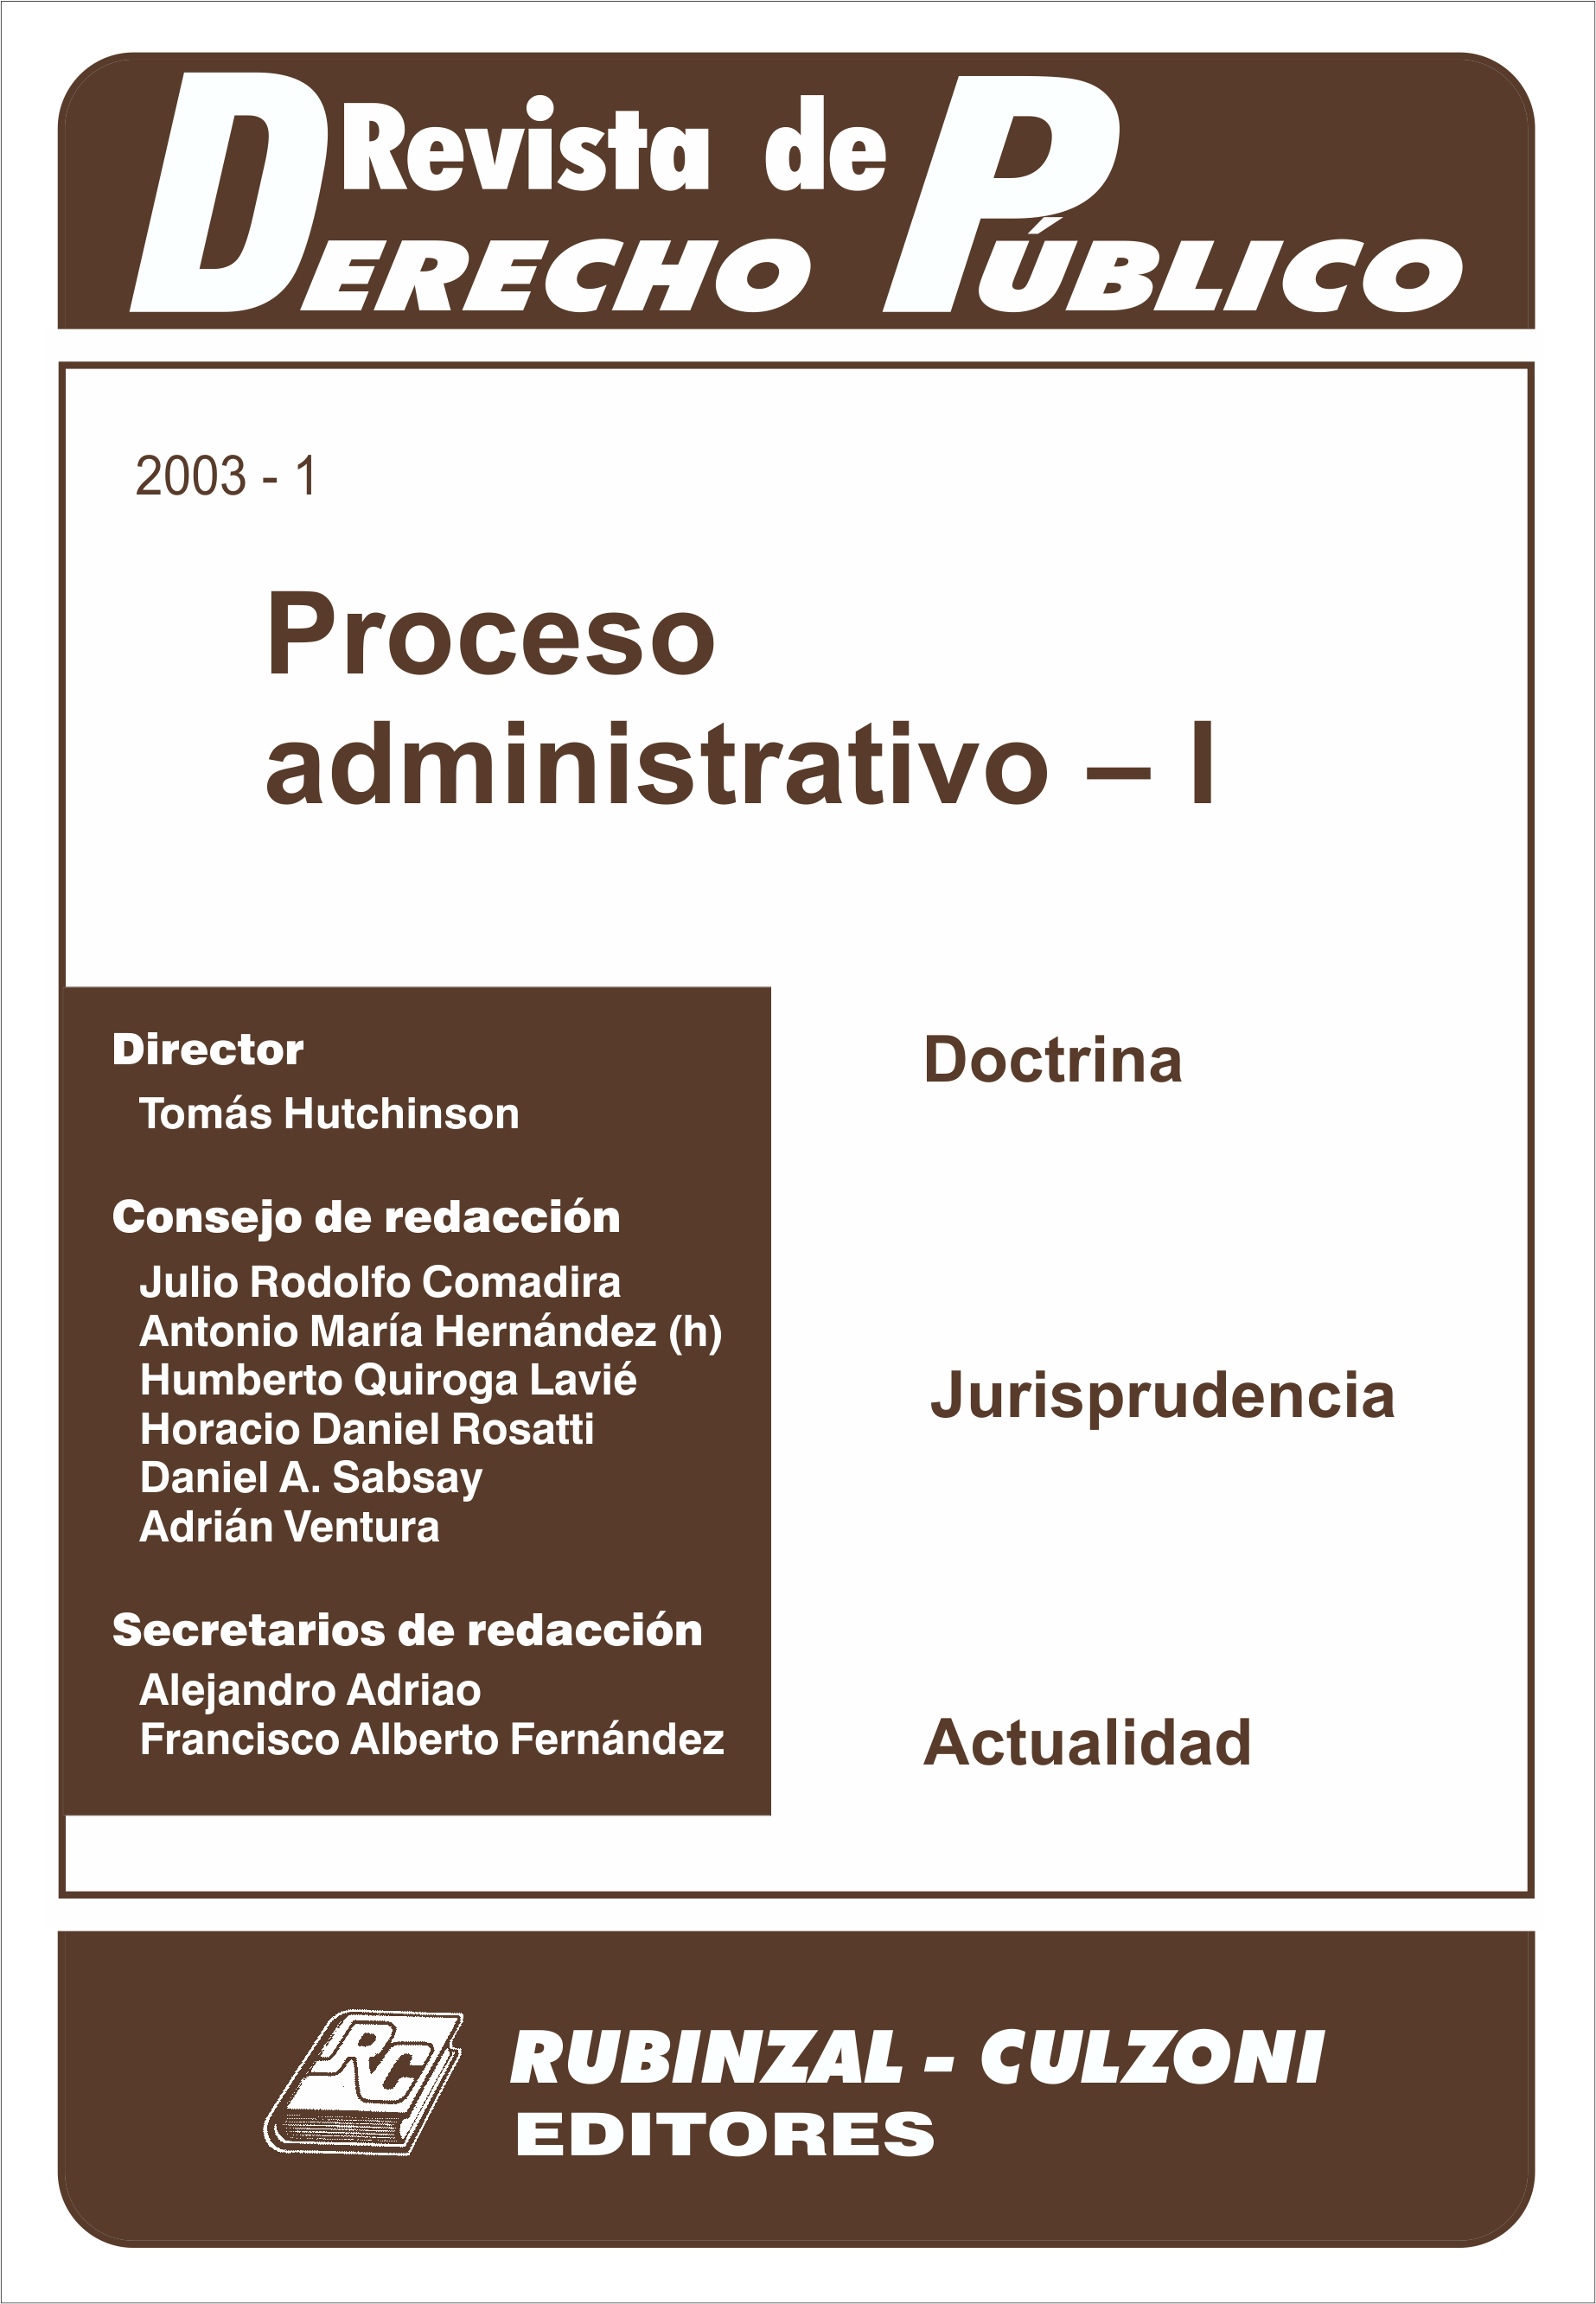 Revista de Derecho Público - Proceso administrativo - I.